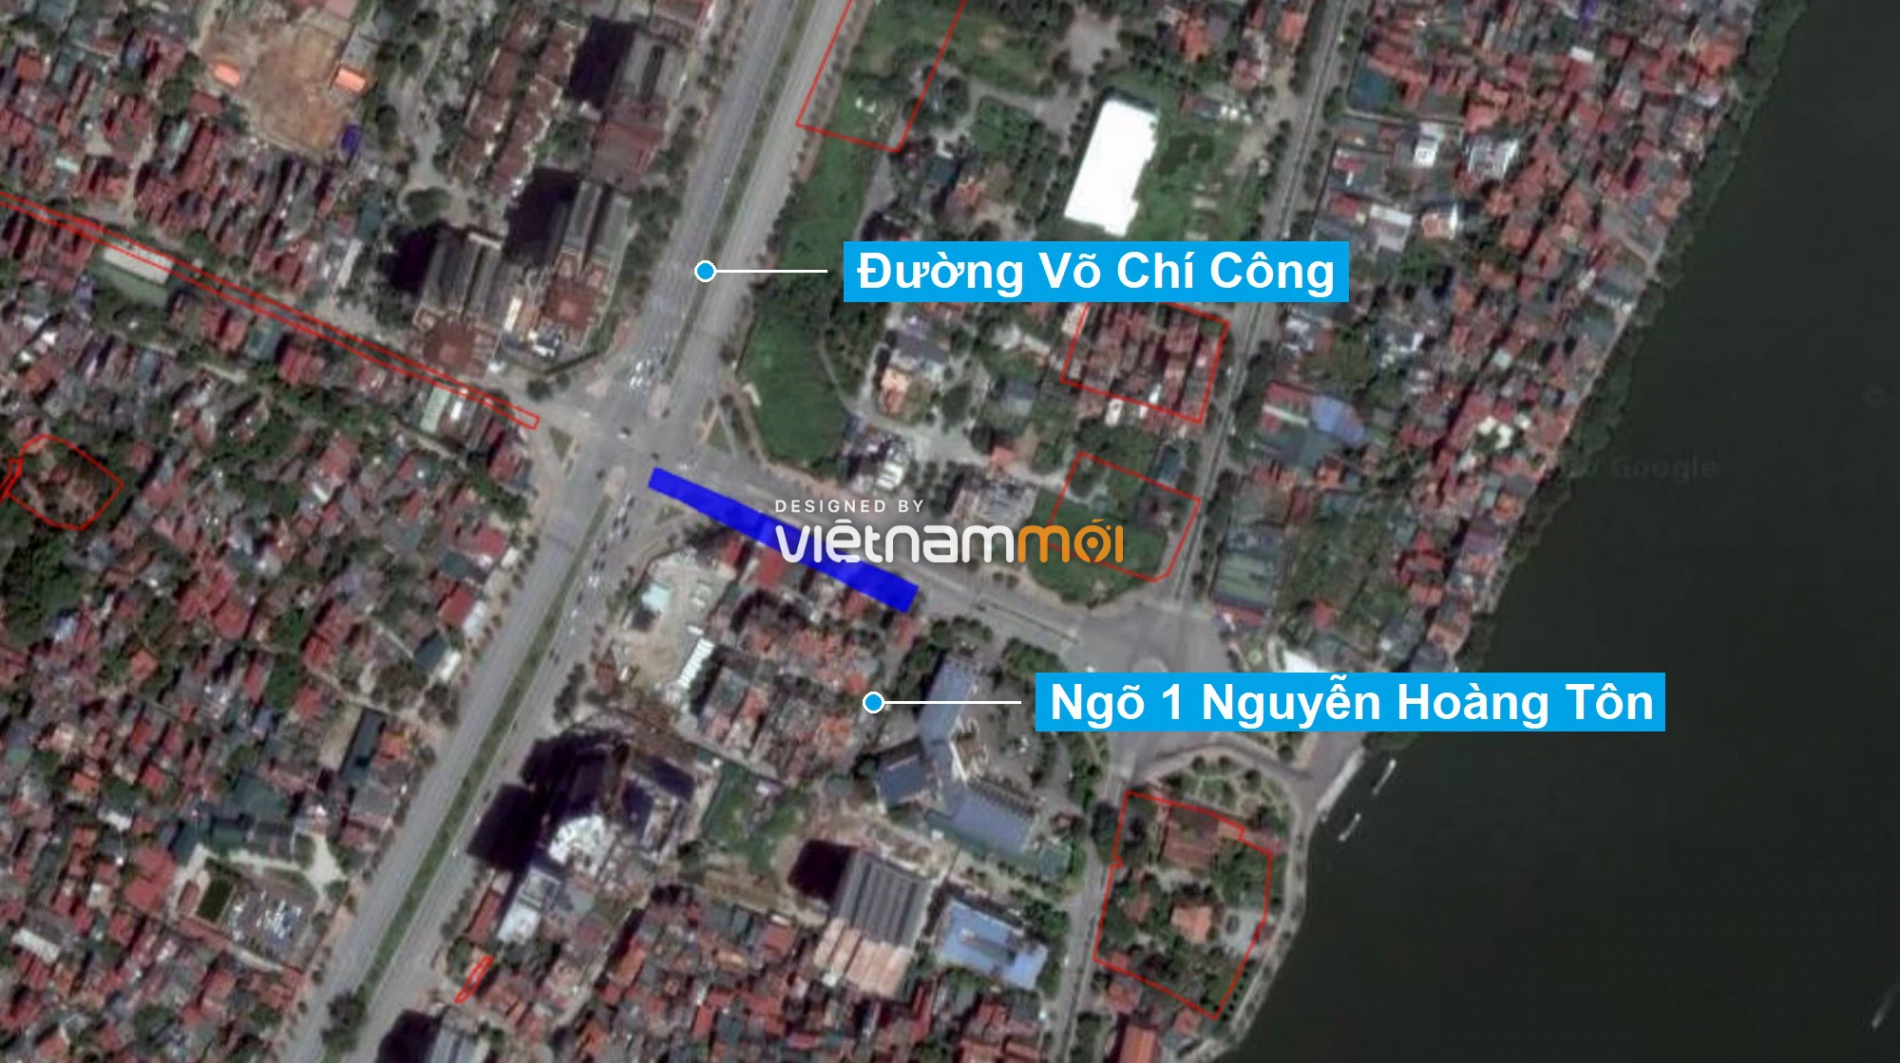 Những khu đất sắp thu hồi để mở đường ở quận Tây Hồ, Hà Nội (phần 1) - Ảnh 2.